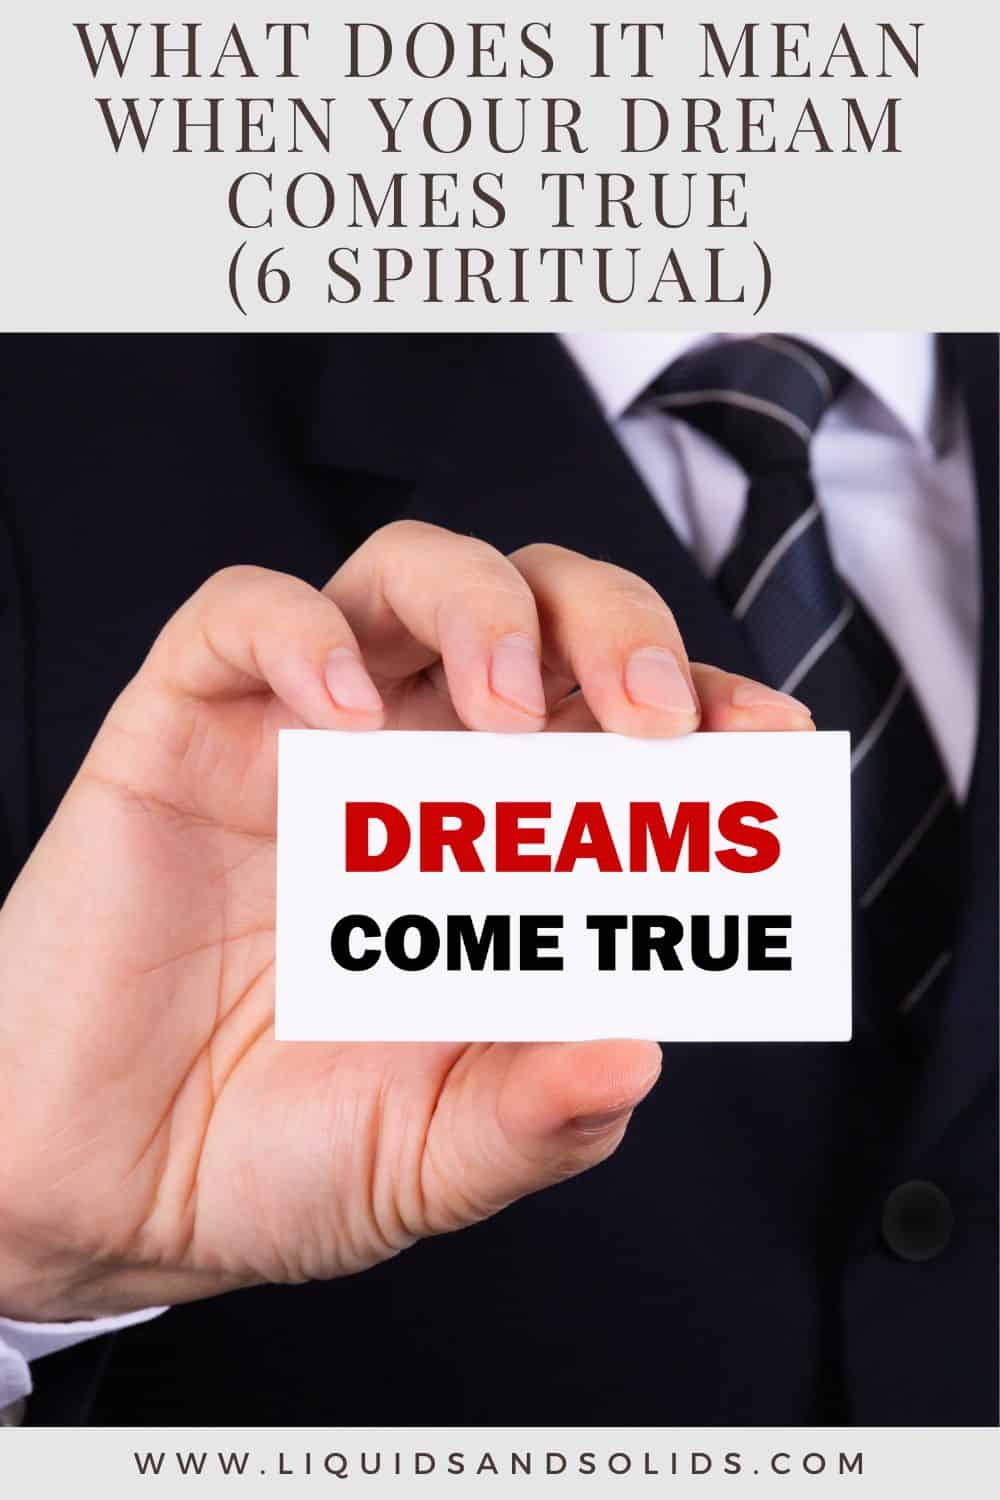  რას ნიშნავს, როცა შენი ოცნება ახდება? (6 სულიერი მნიშვნელობა)